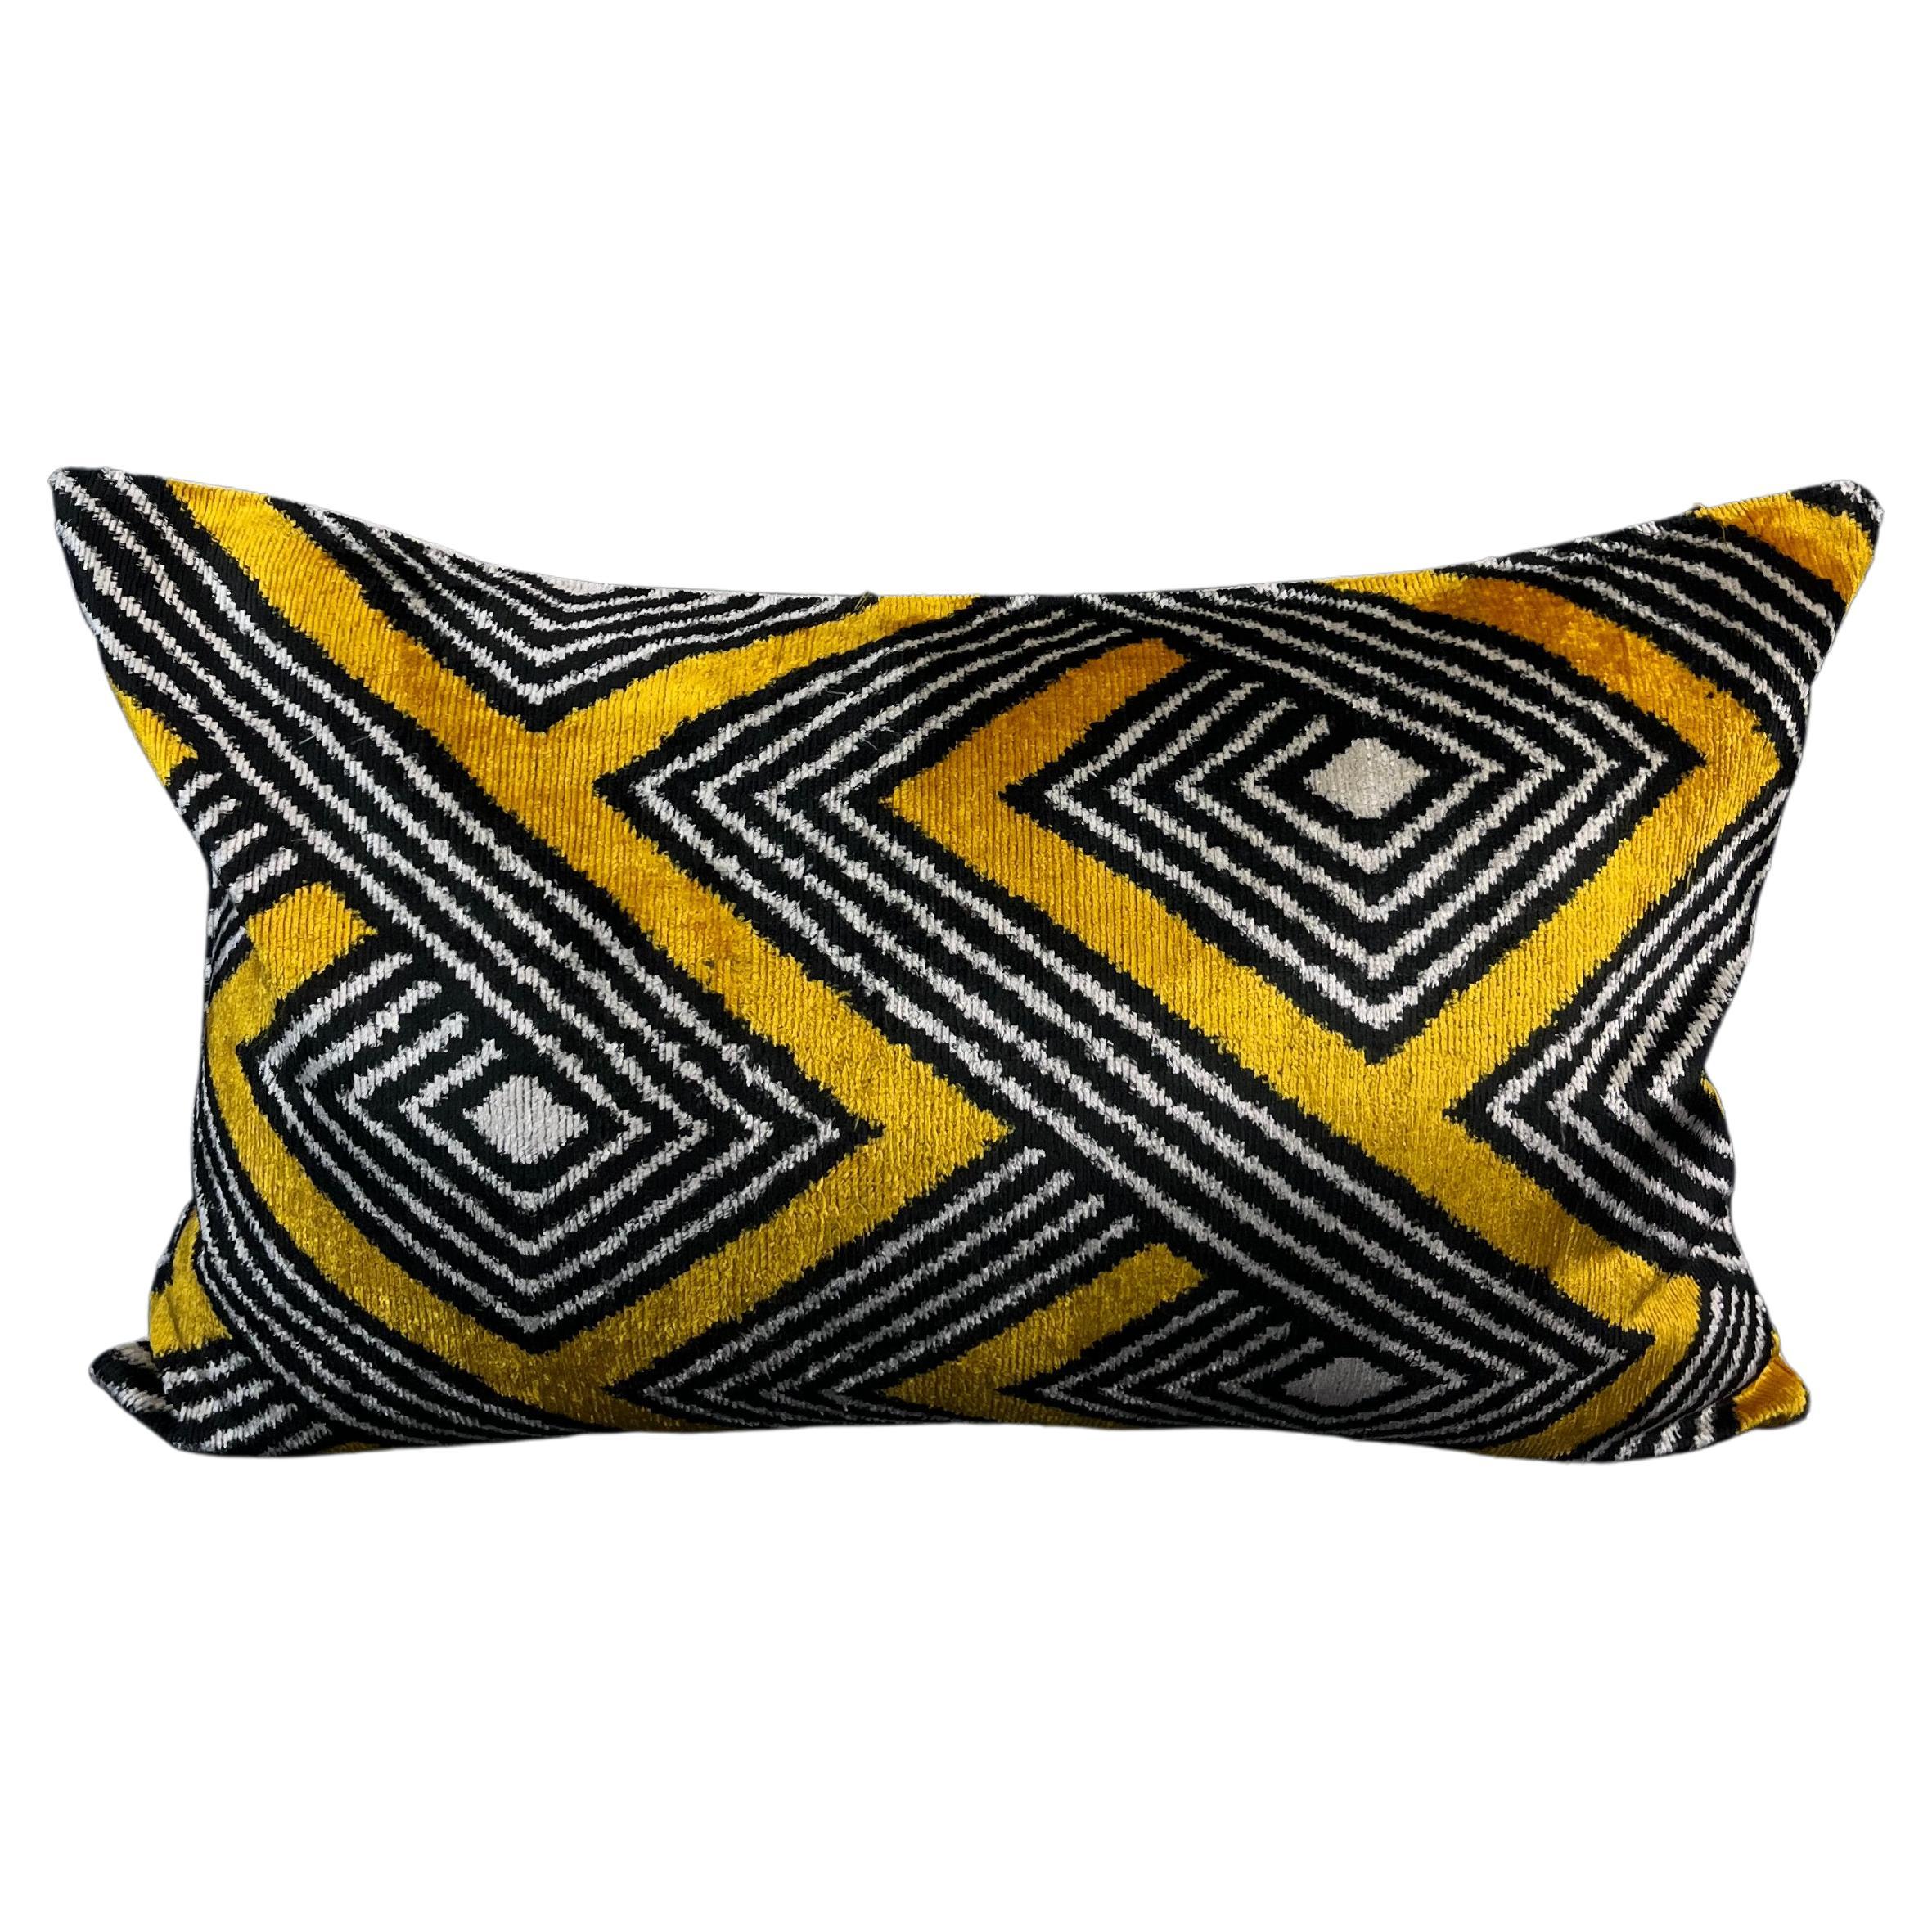 Housse de coussin Ikat en velours de soie à motifs géométriques noirs et jaunes 16" x 24".